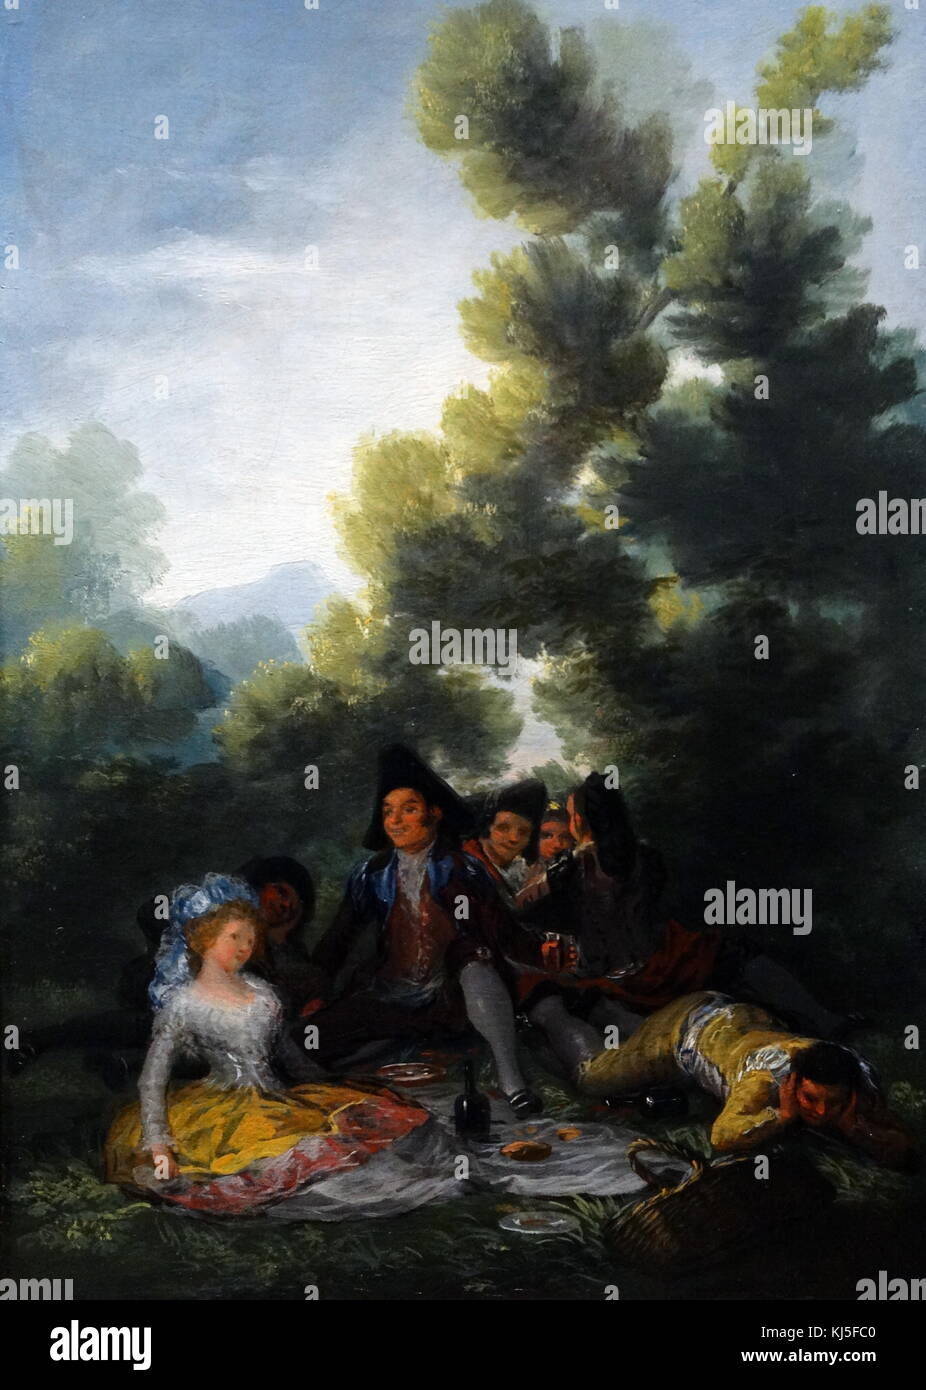 Pintura titulada "picnic" por Francisco de Goya (1746-1828), un pintor y grabador español romántico. Fecha del siglo XVIII Foto de stock